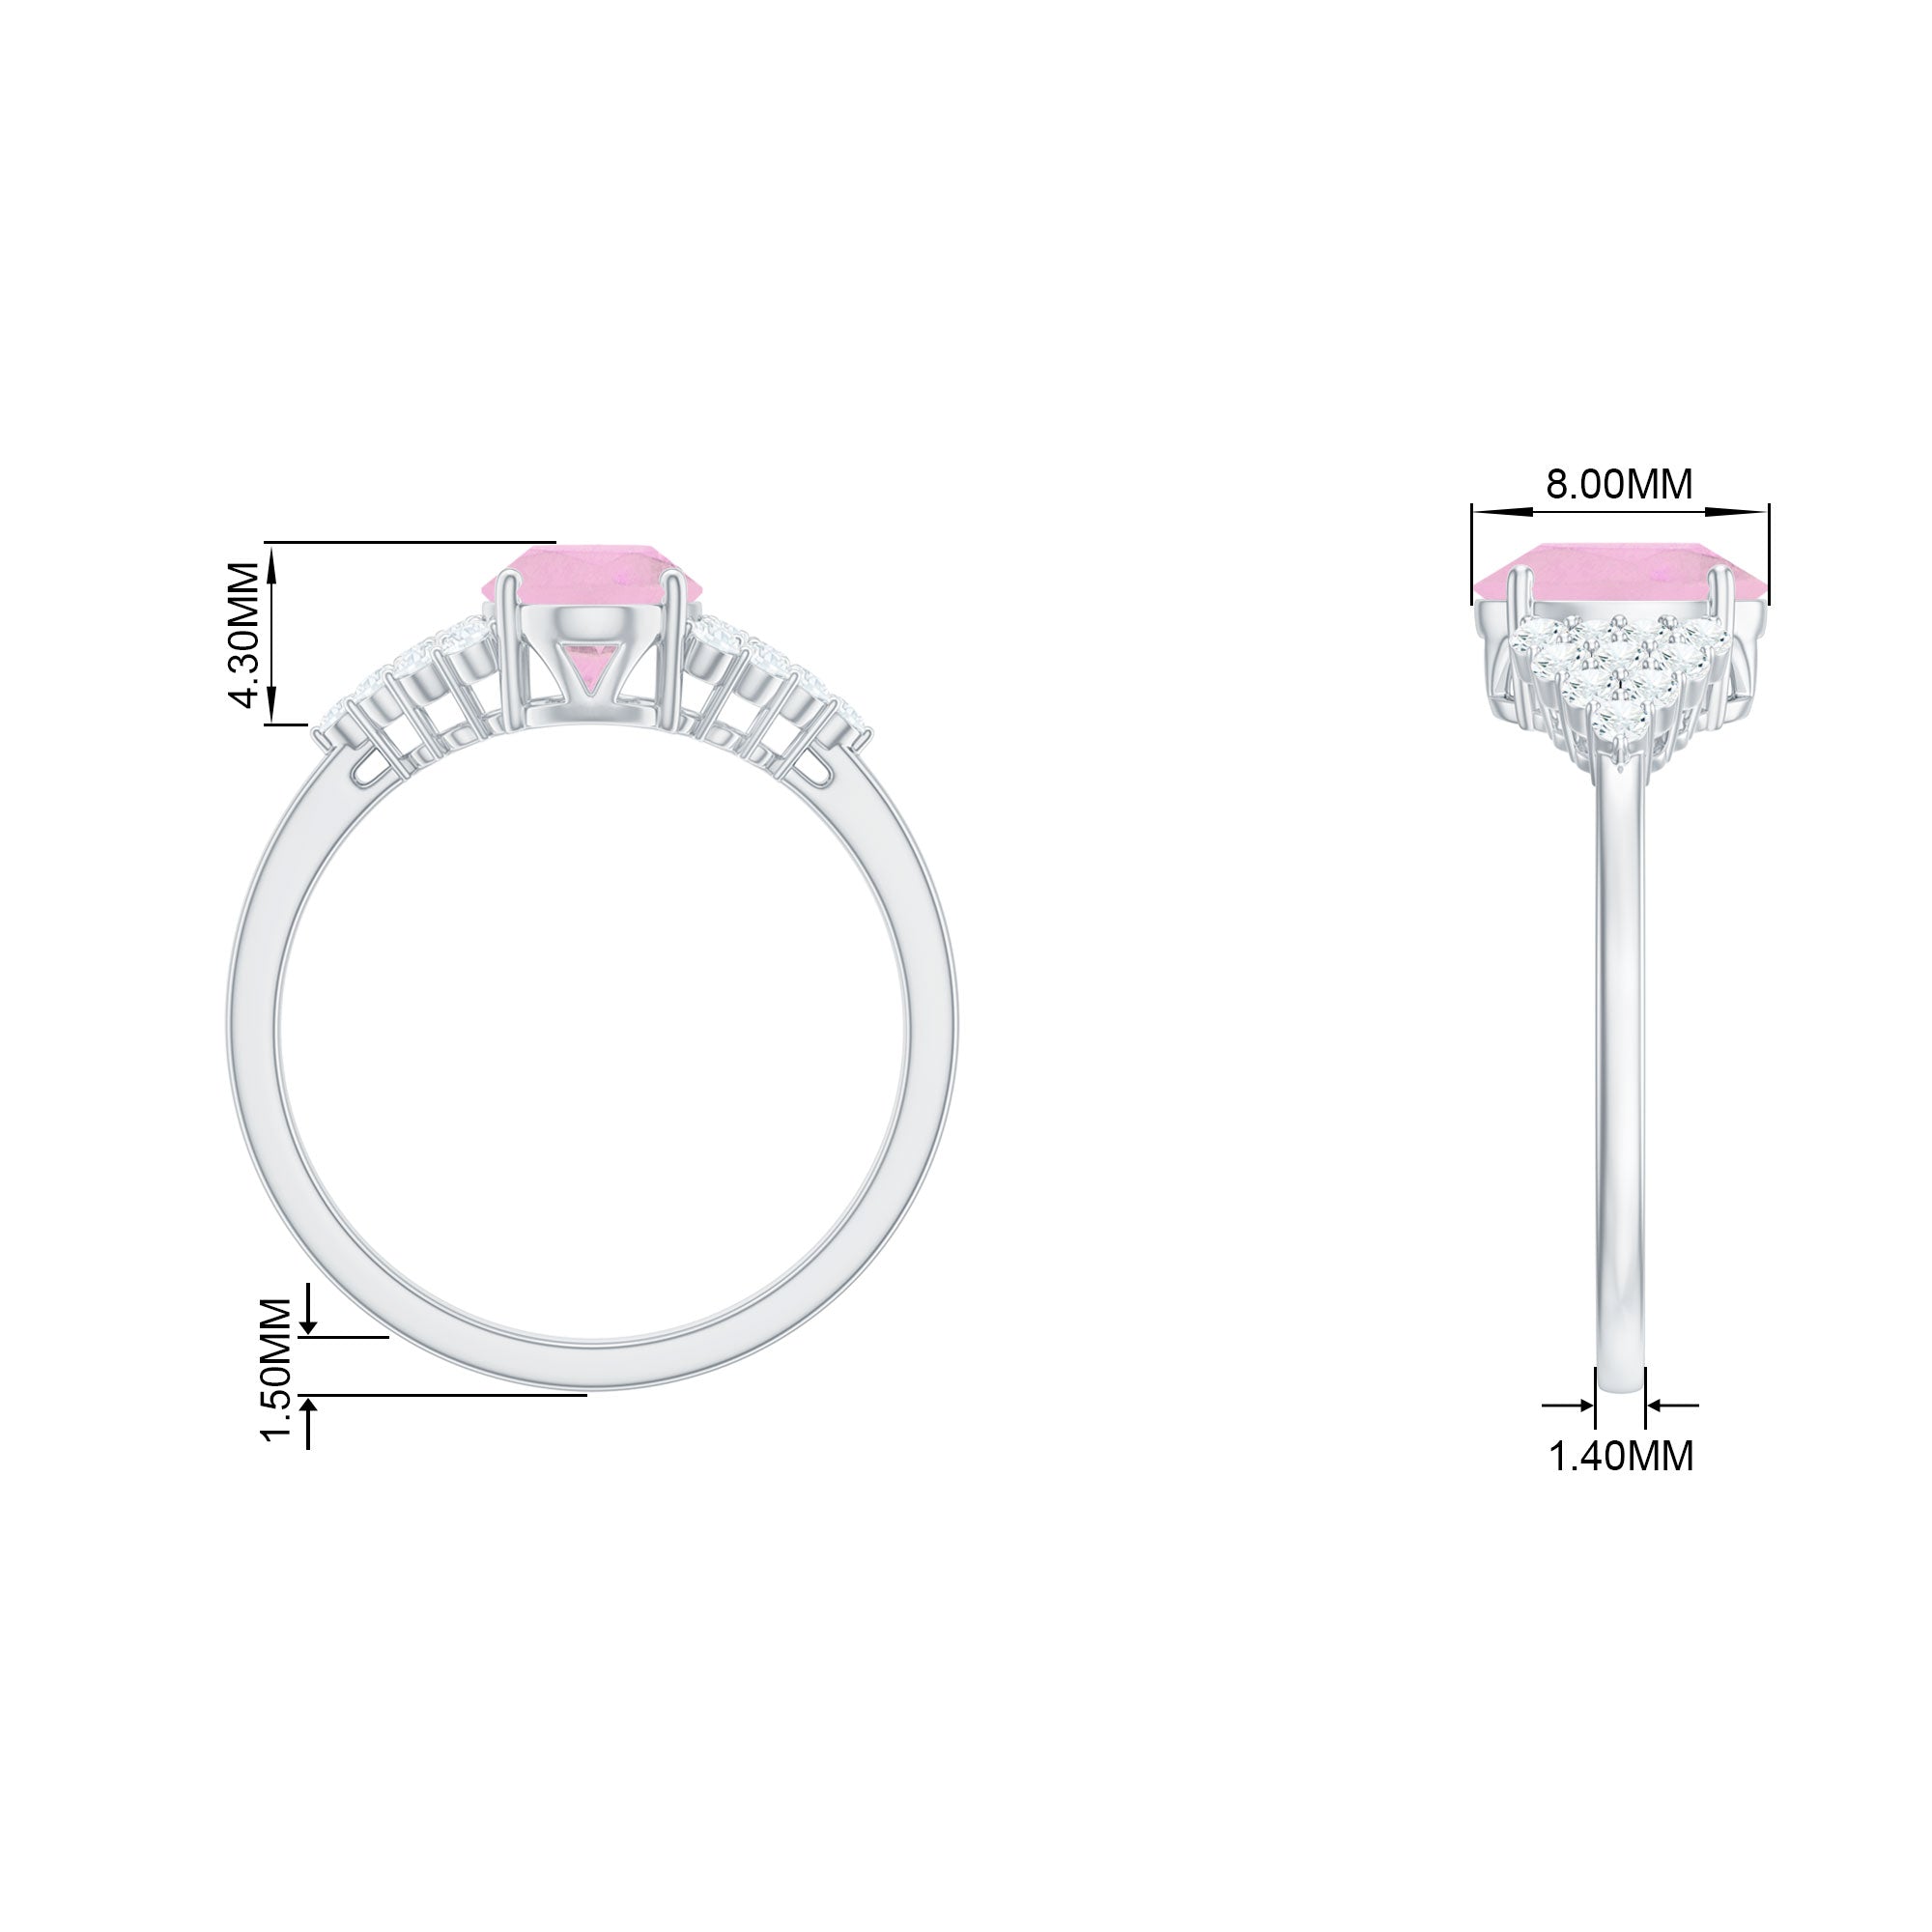 1.50 CT Elegant Rose Quartz Solitaire Ring with Diamond Accent Rose Quartz - ( AAA ) - Quality - Rosec Jewels